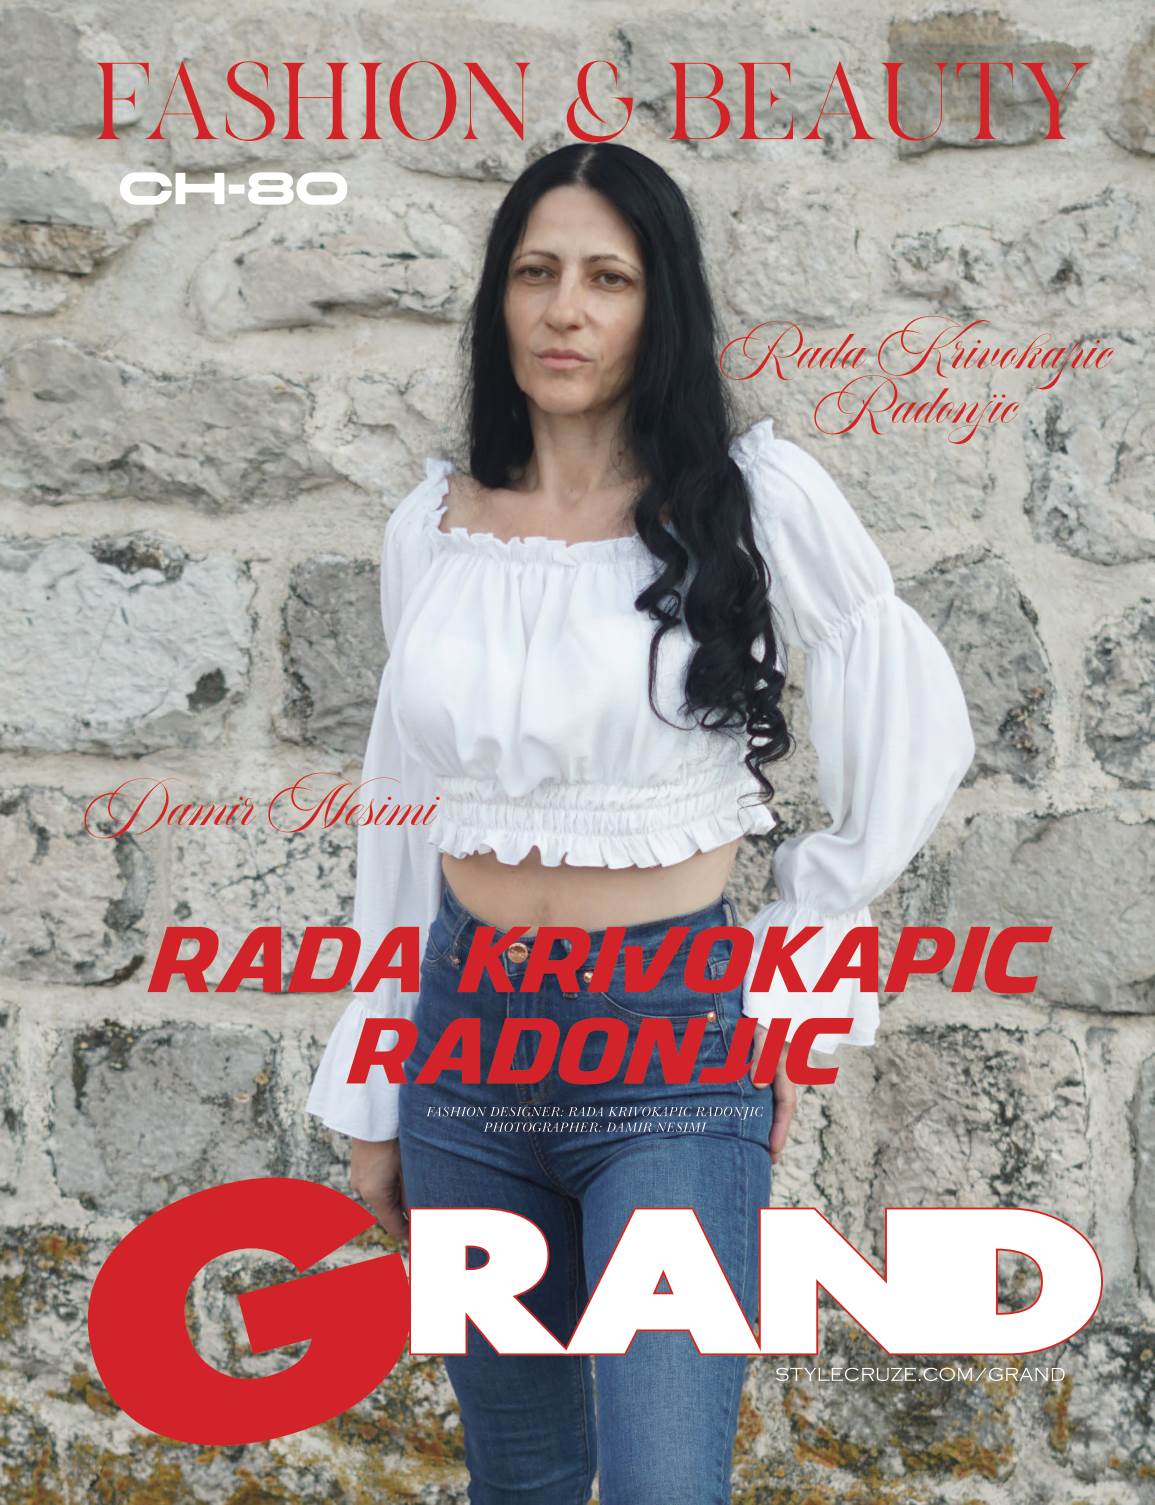 GRAND Magazine Rada Krivokapic Radonjic modna kreatorka i stilistkinja